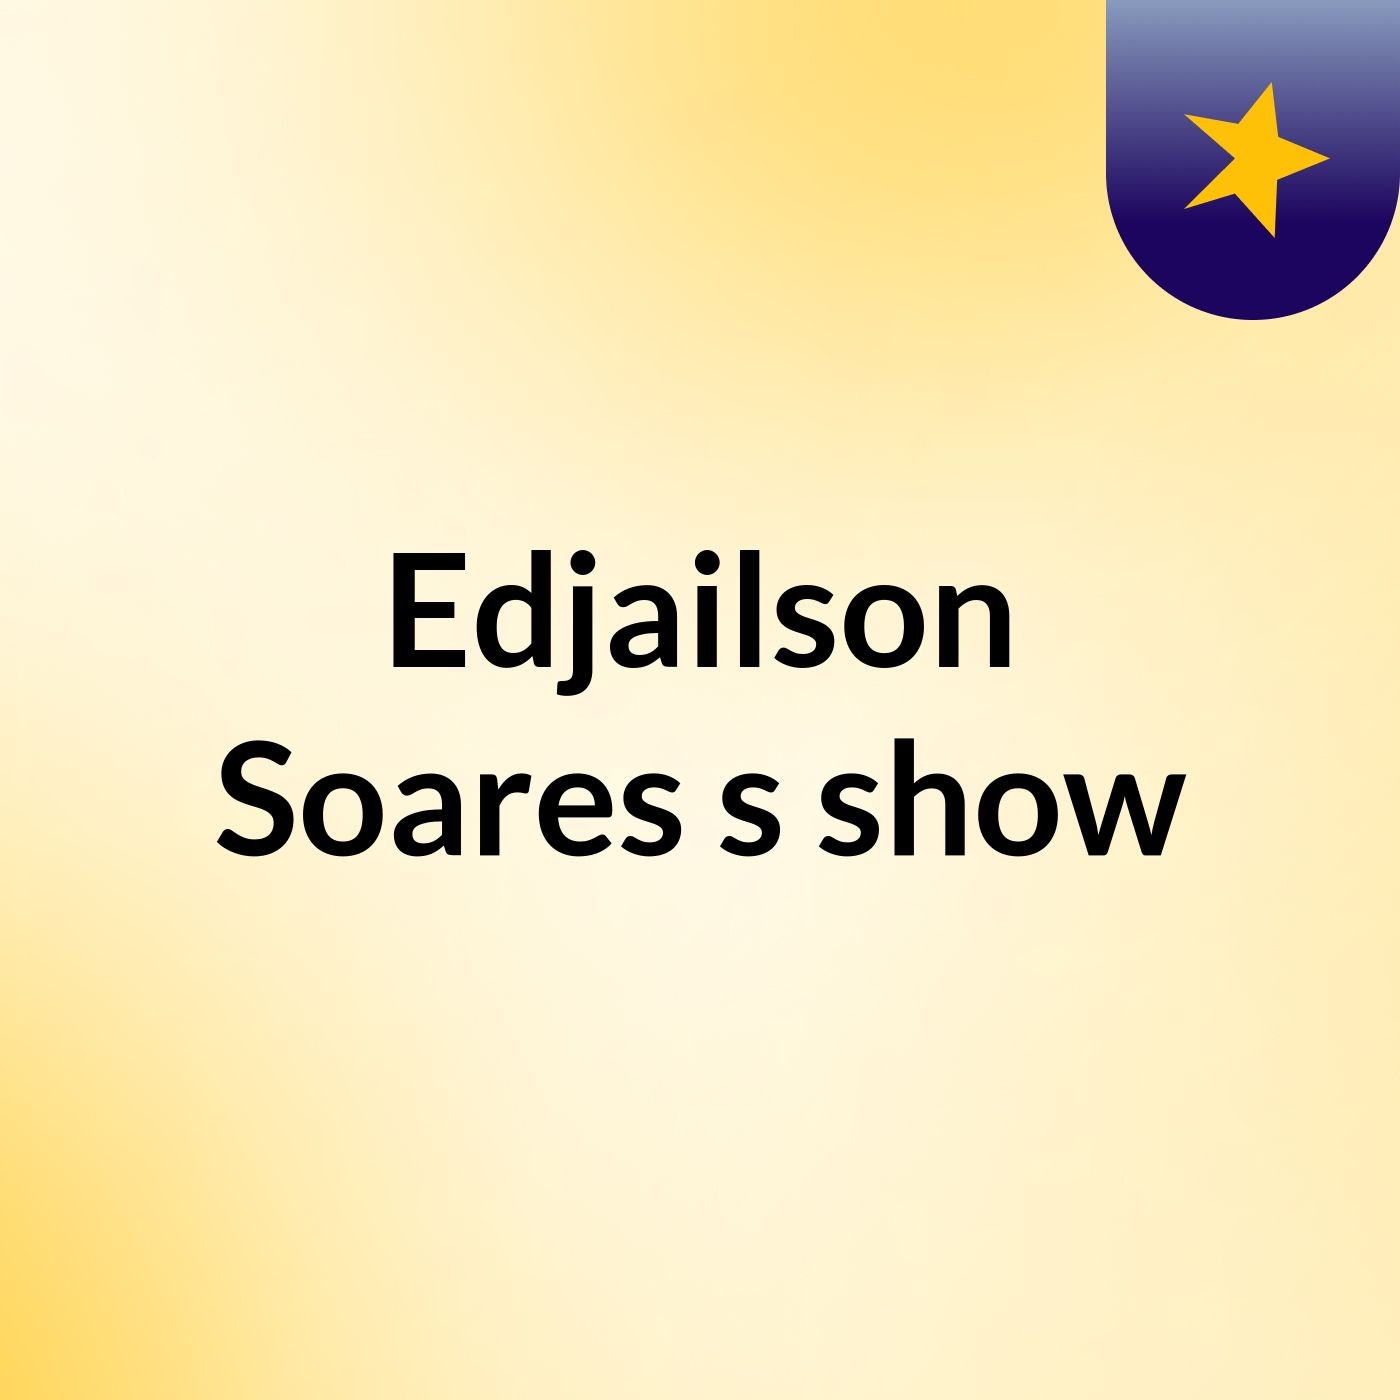 Edjailson Soares's show